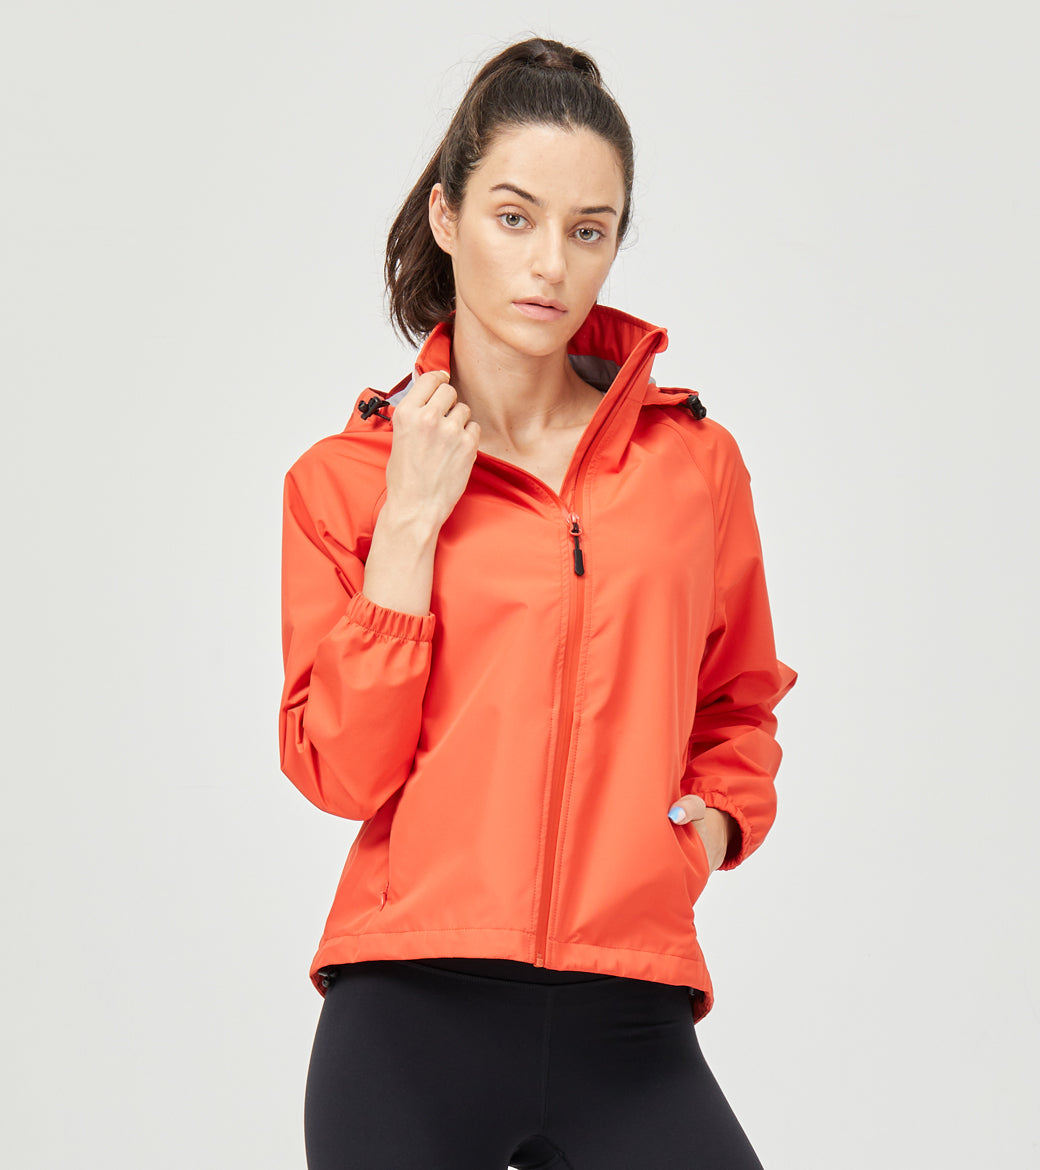 LOVESOFT Women's Orange Outdoor Jacket Waterproof Windproof Warm Jacket